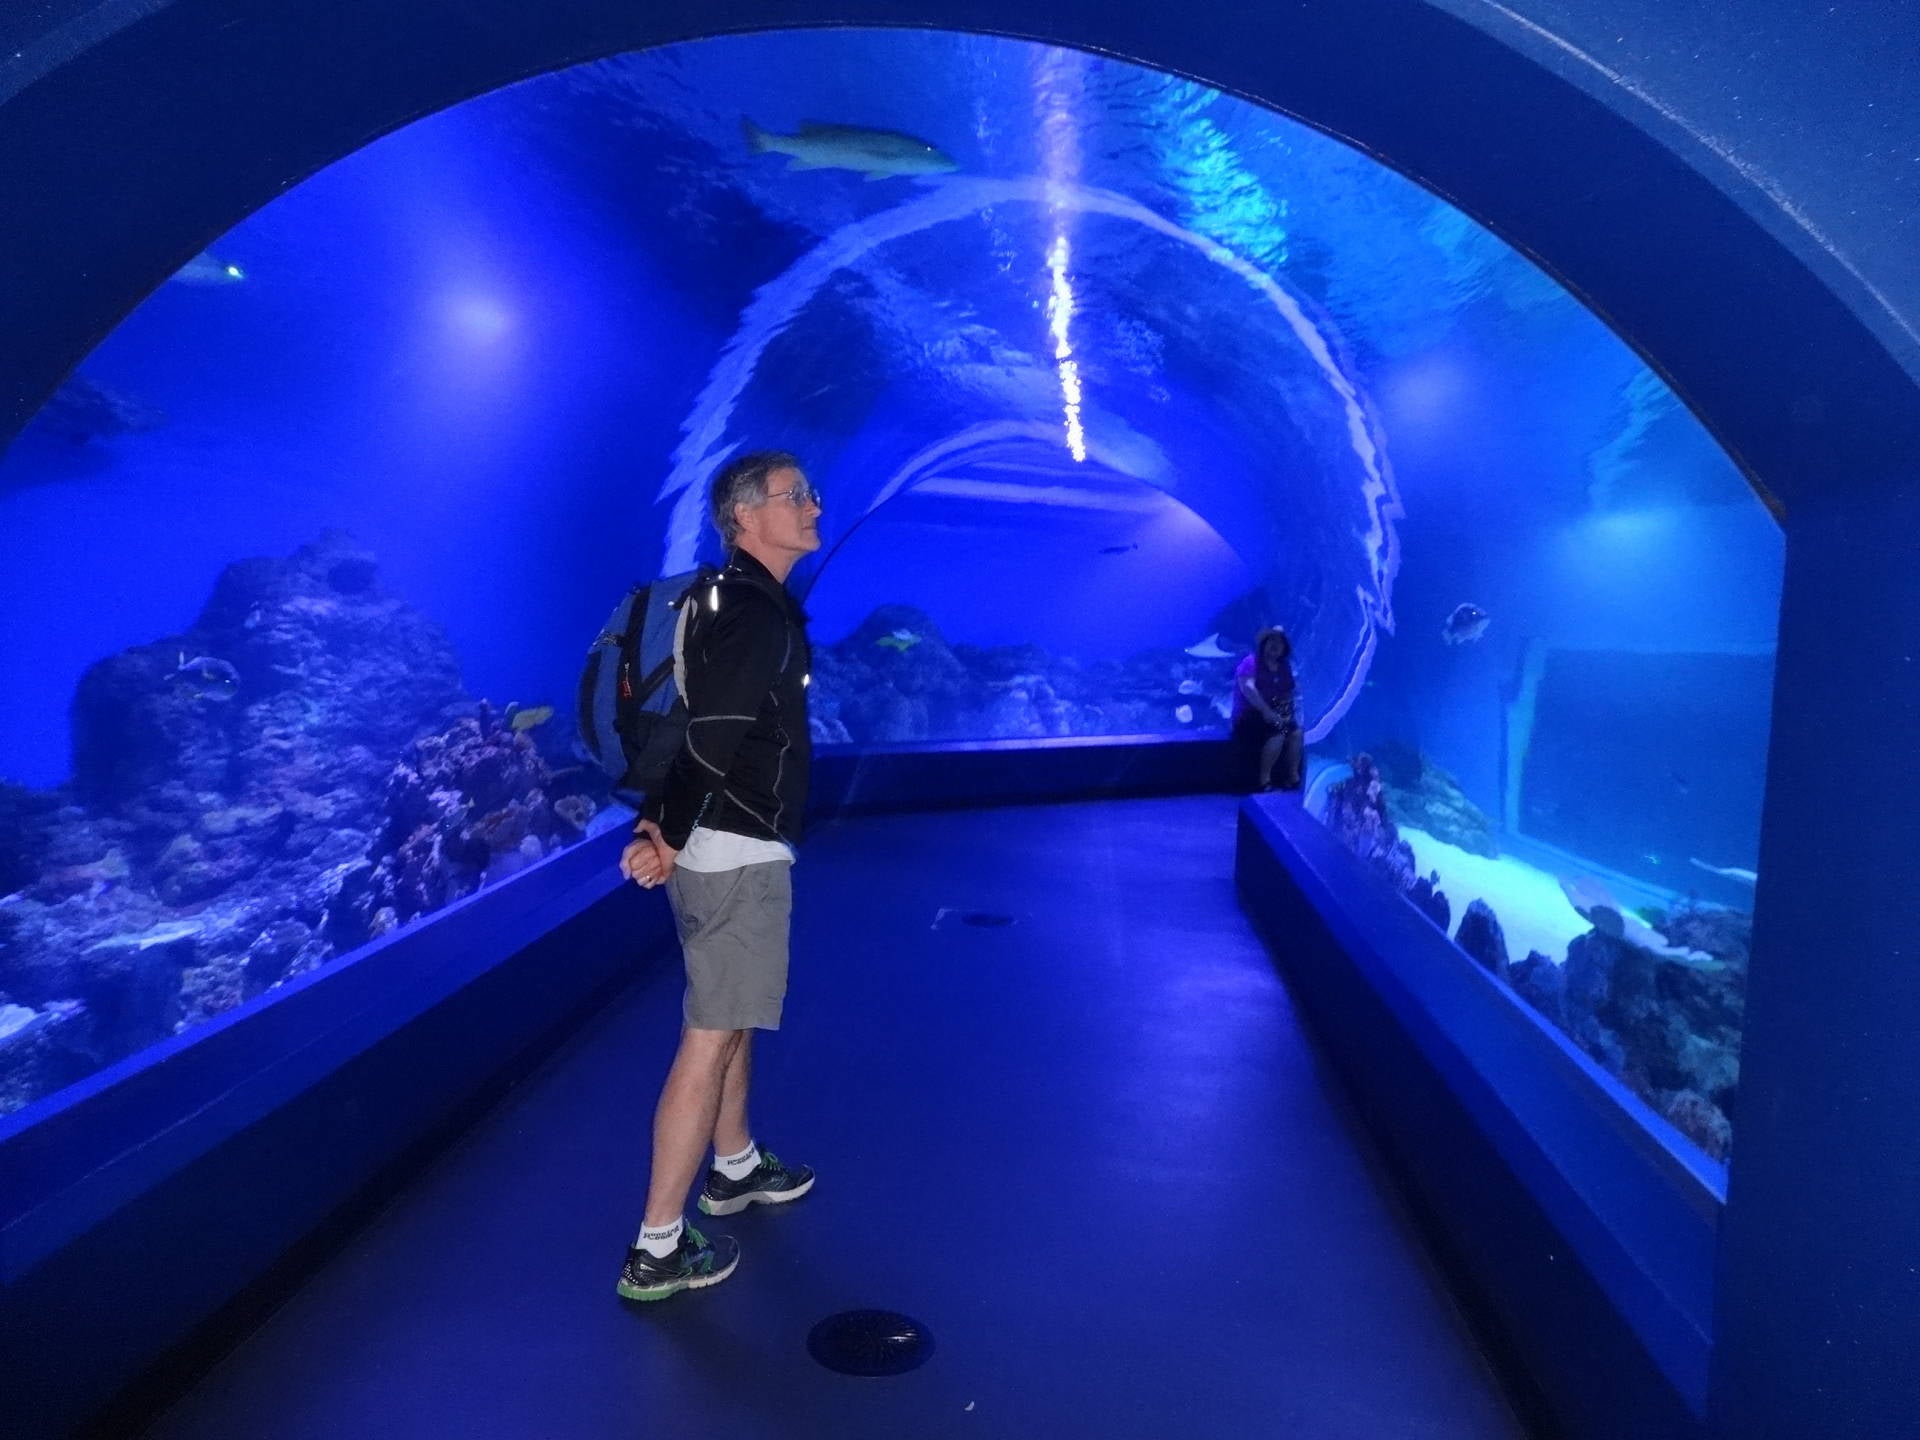 April 6 2018 at the excellent new aquarium in Cairns QLD